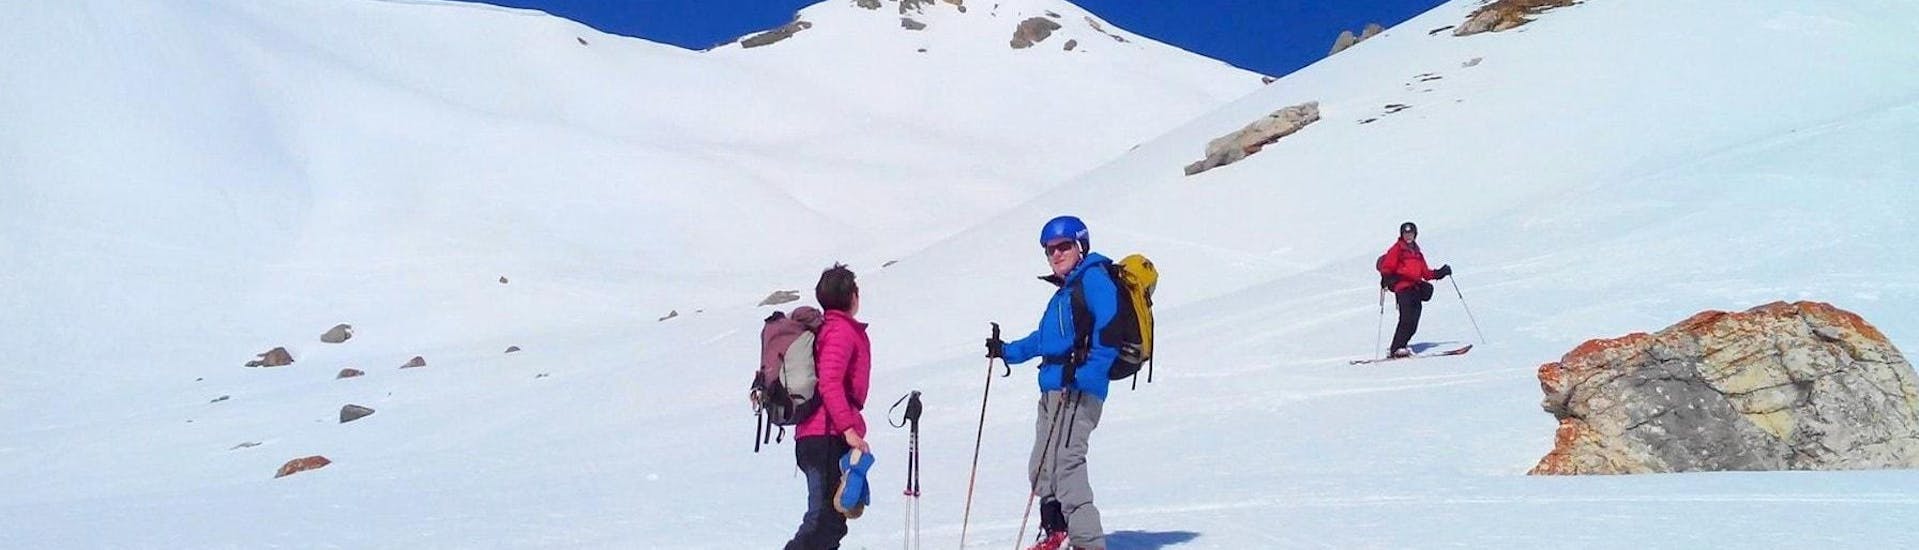 Ski de randonnée Adultes pour Tous niveaux.